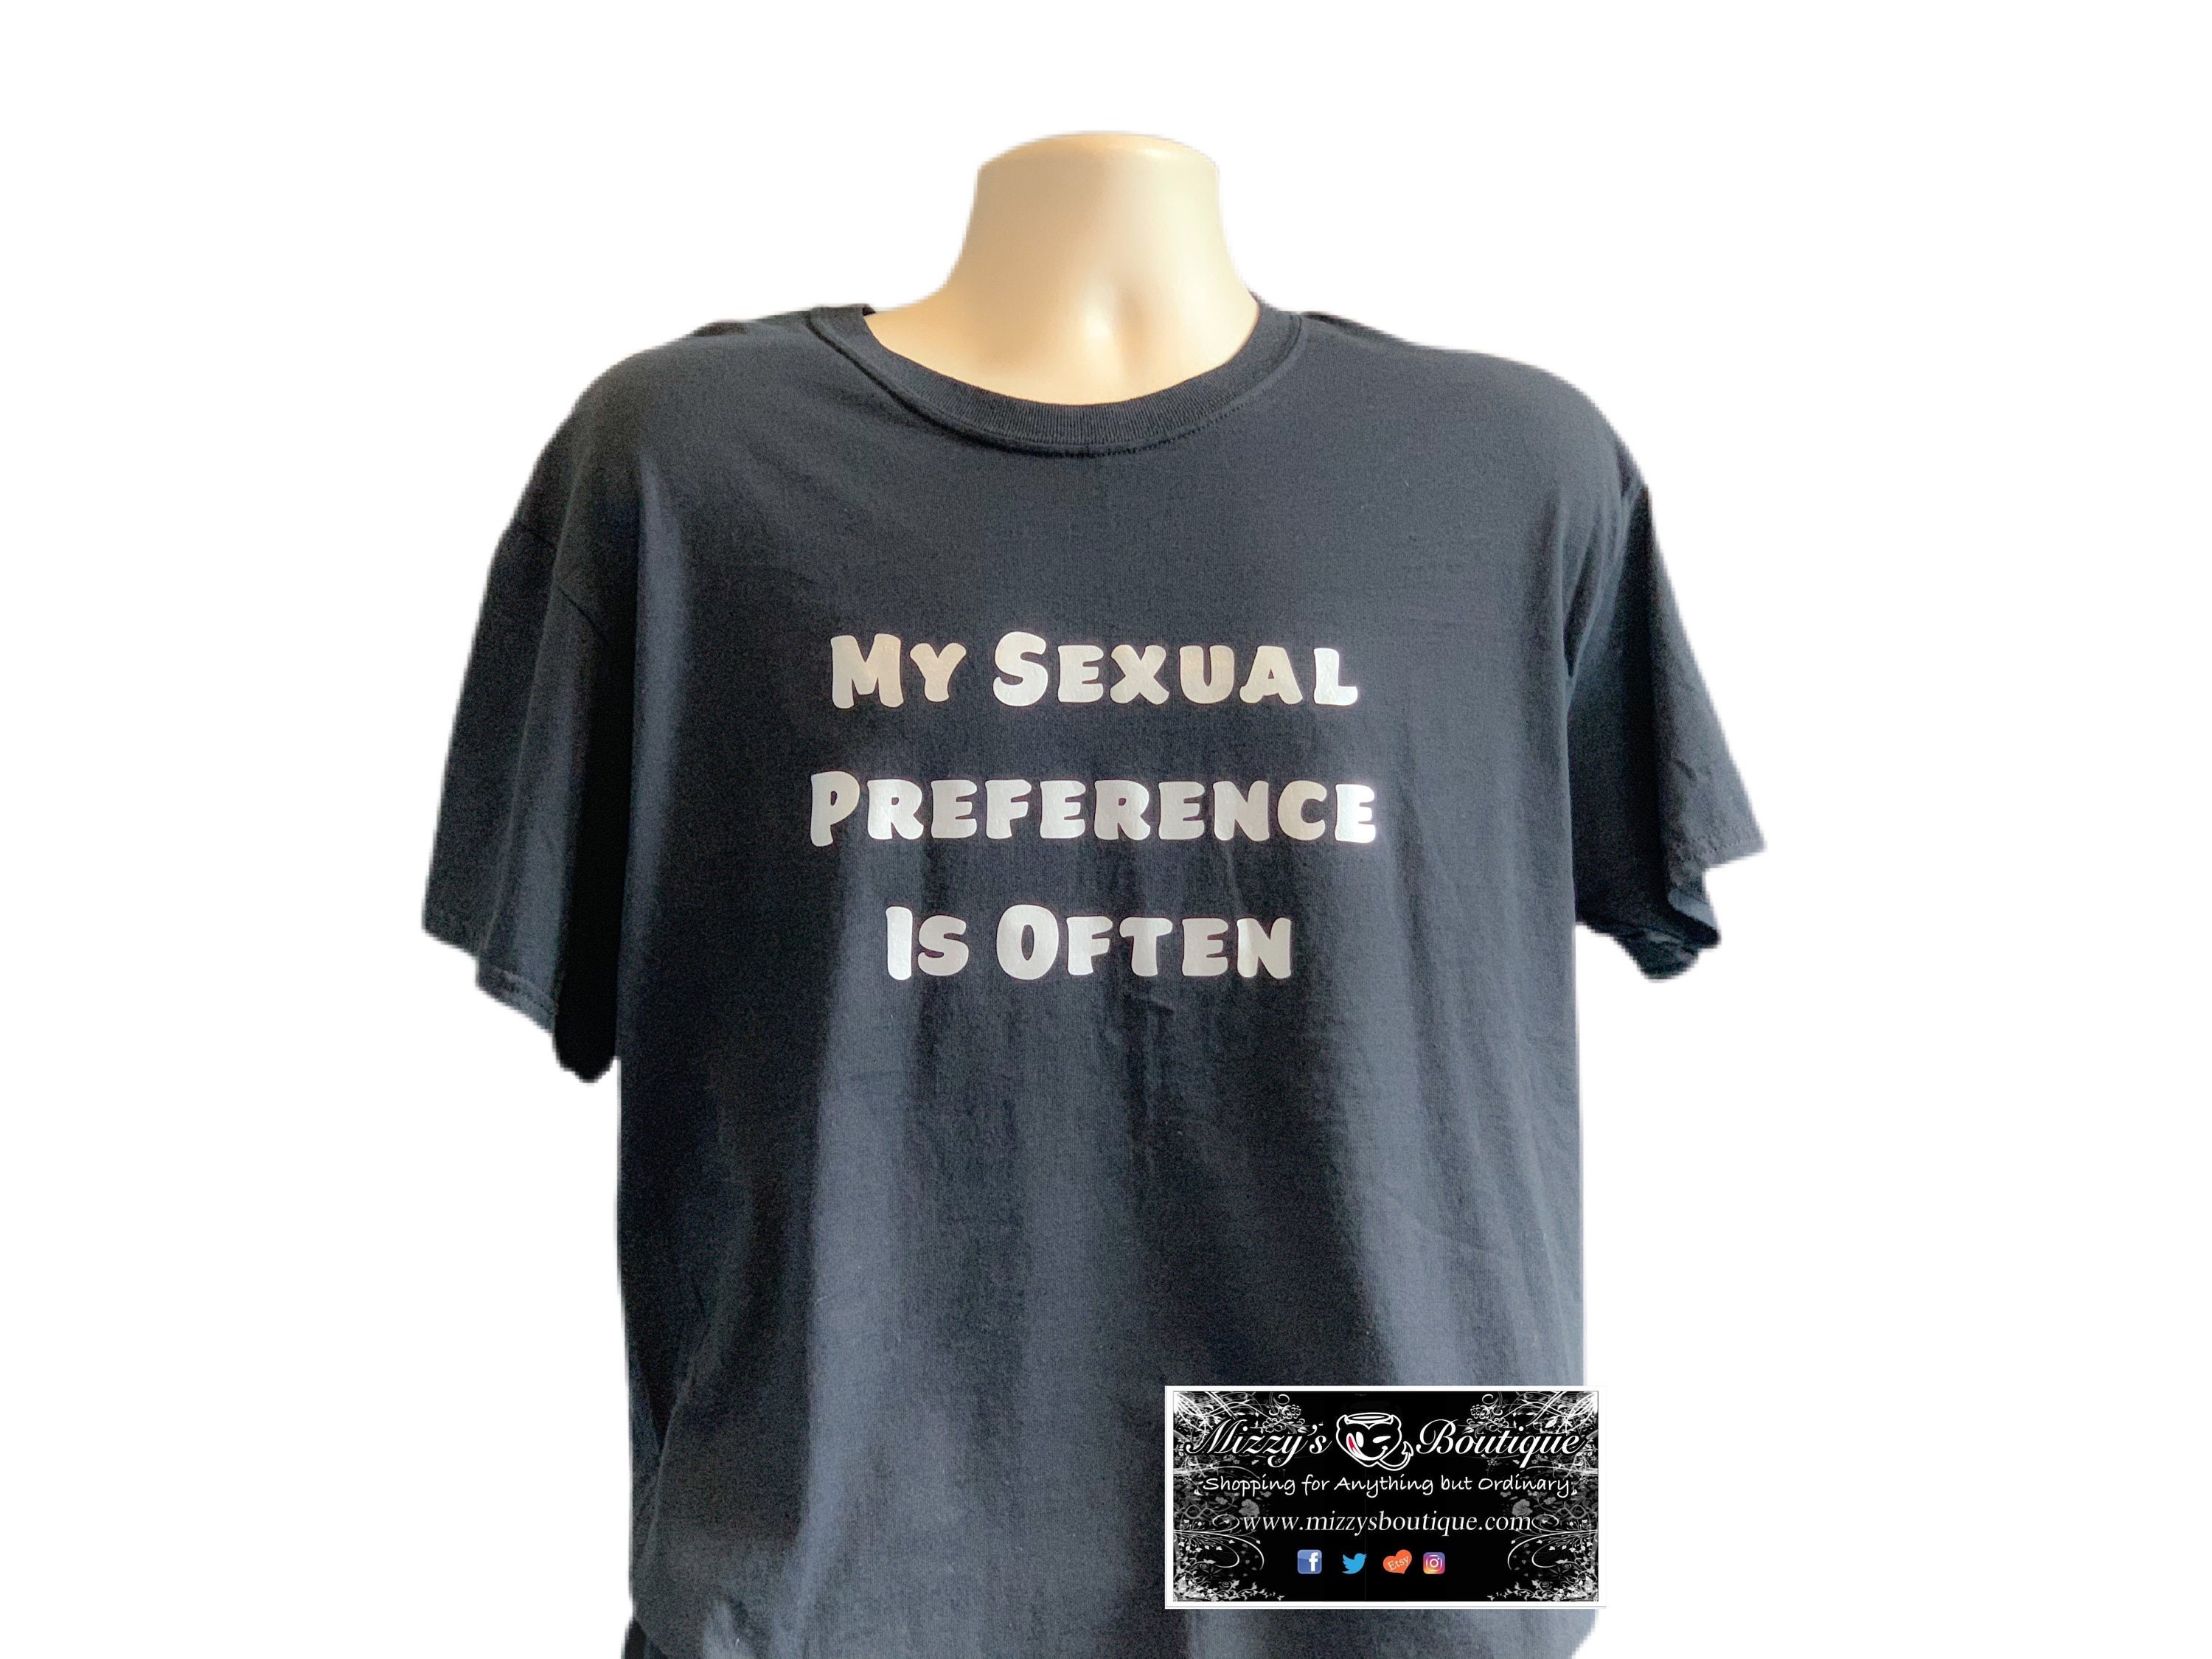 Unisex Tshirt Adult Sex Shirt Mens Clothing Shirts pic image